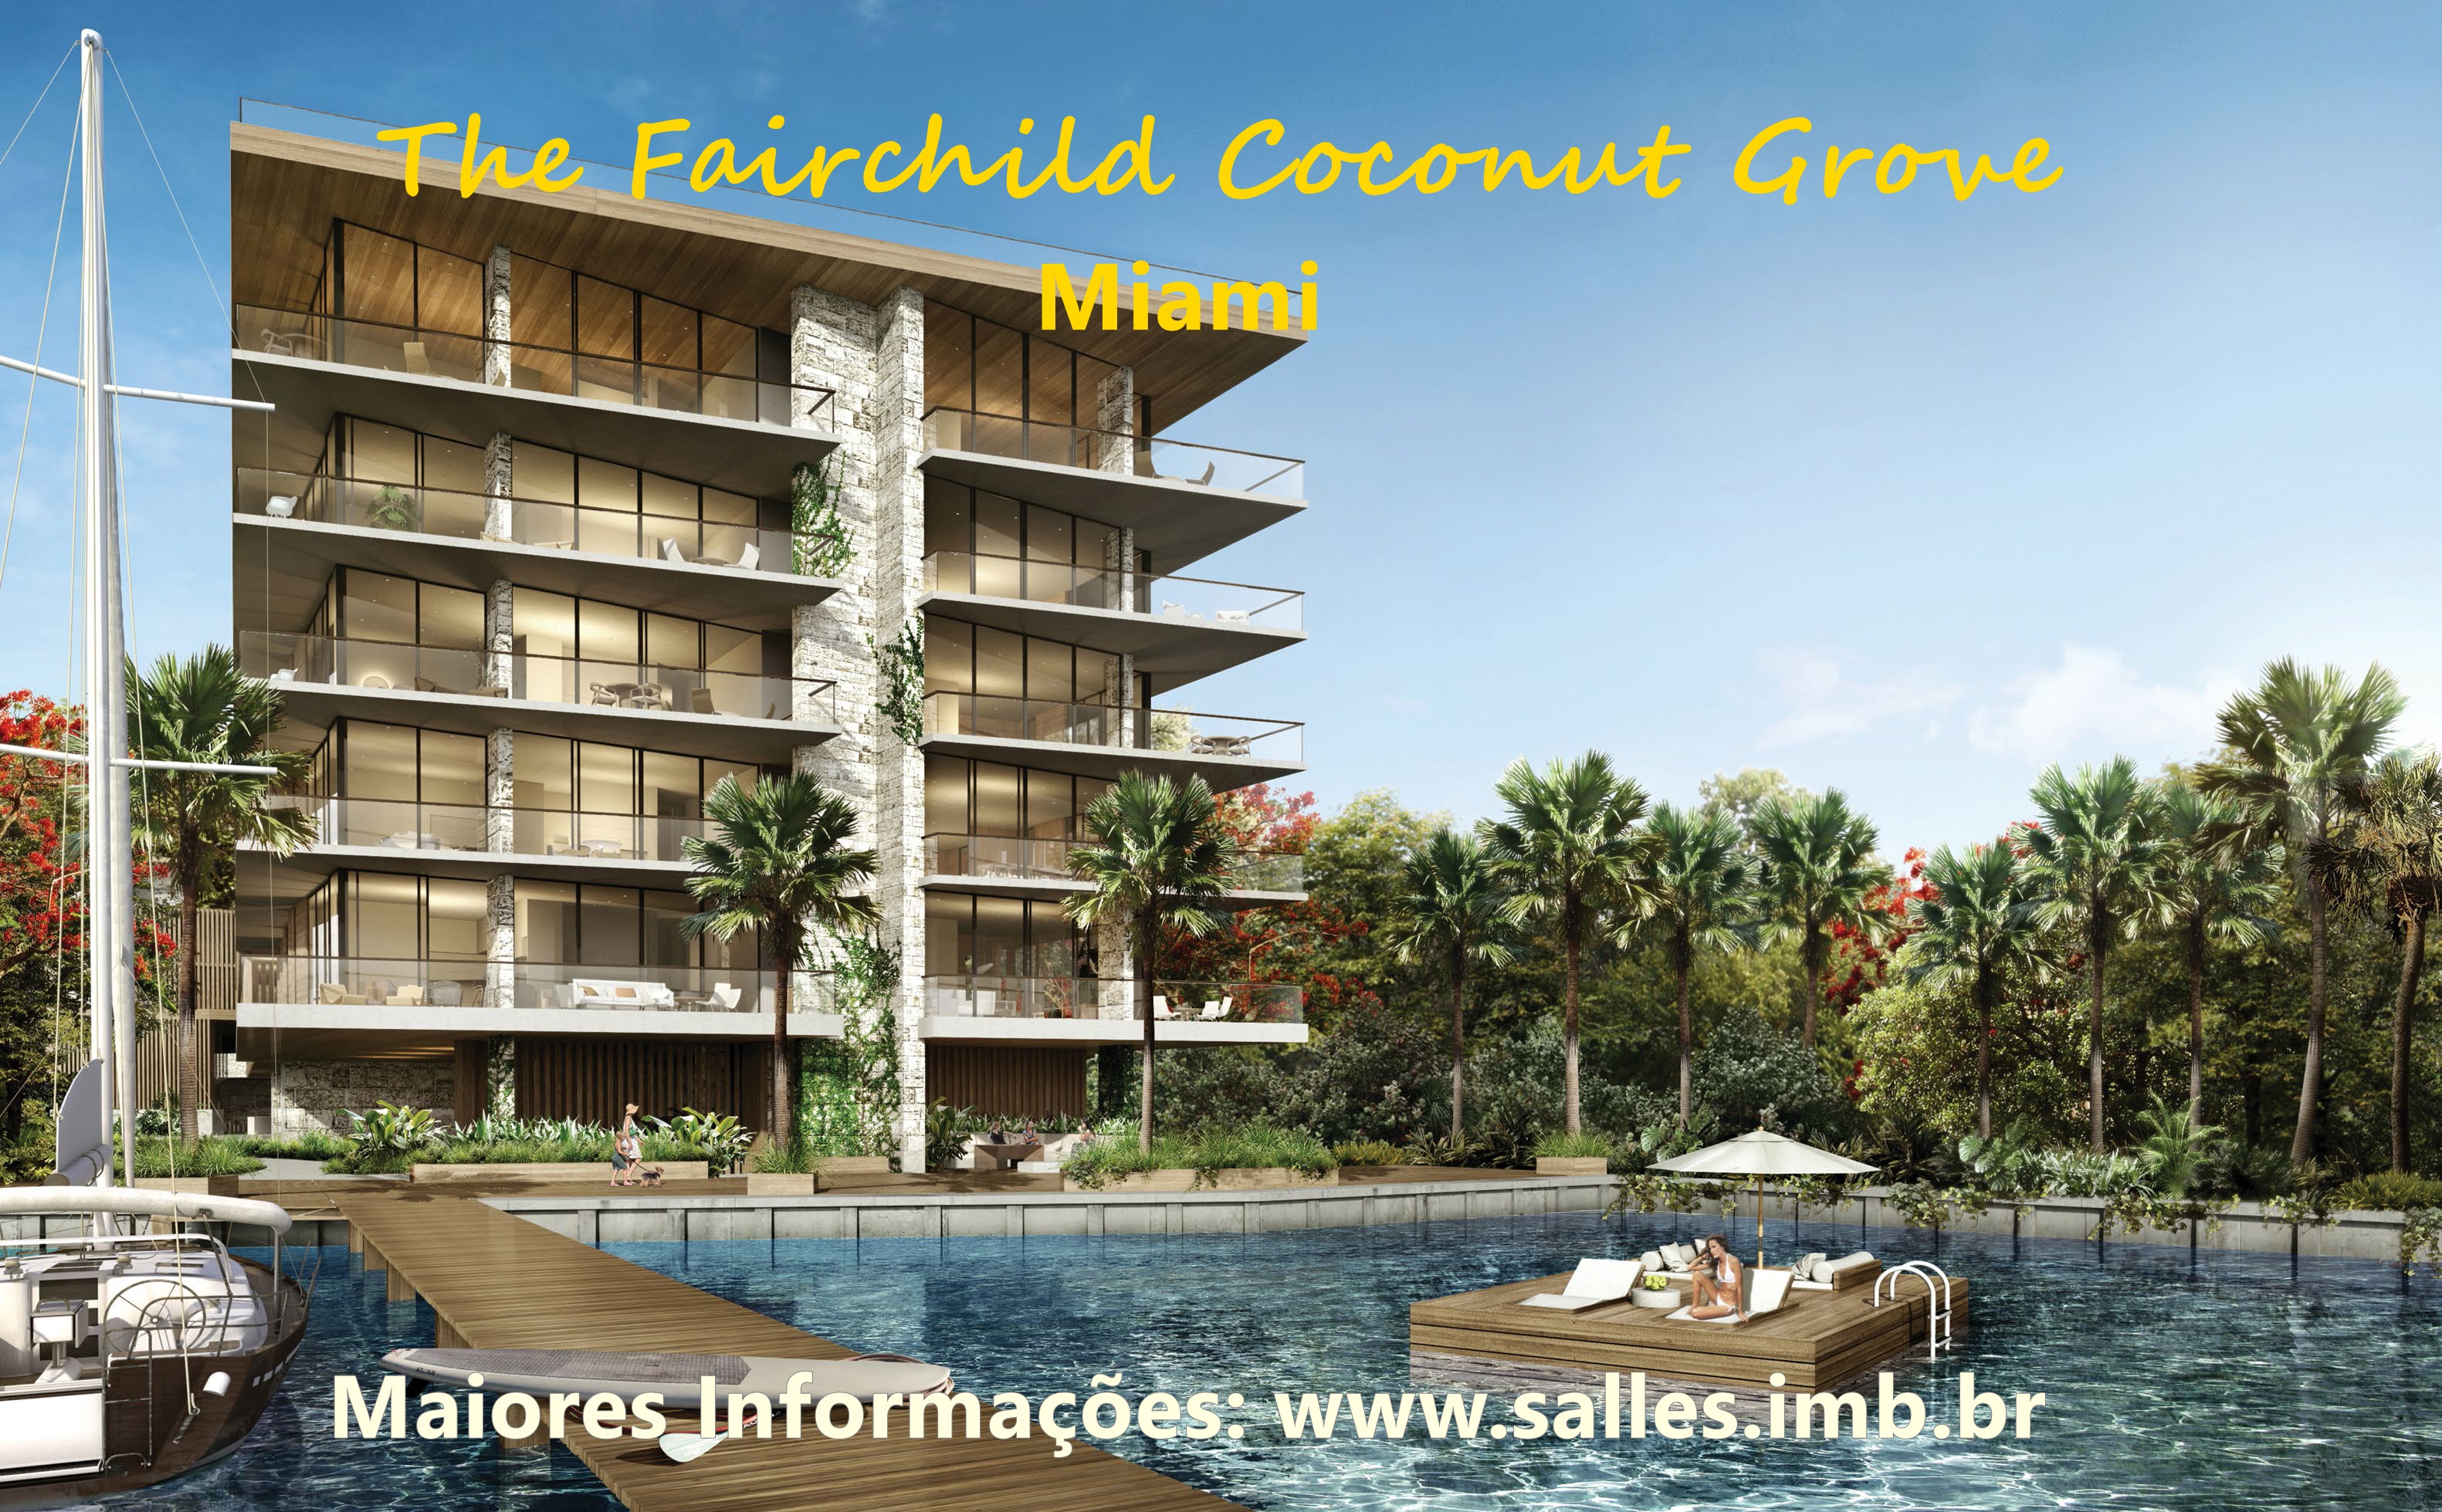 The Fairchild Coconut Grove - Miami  - Salles Imóveis